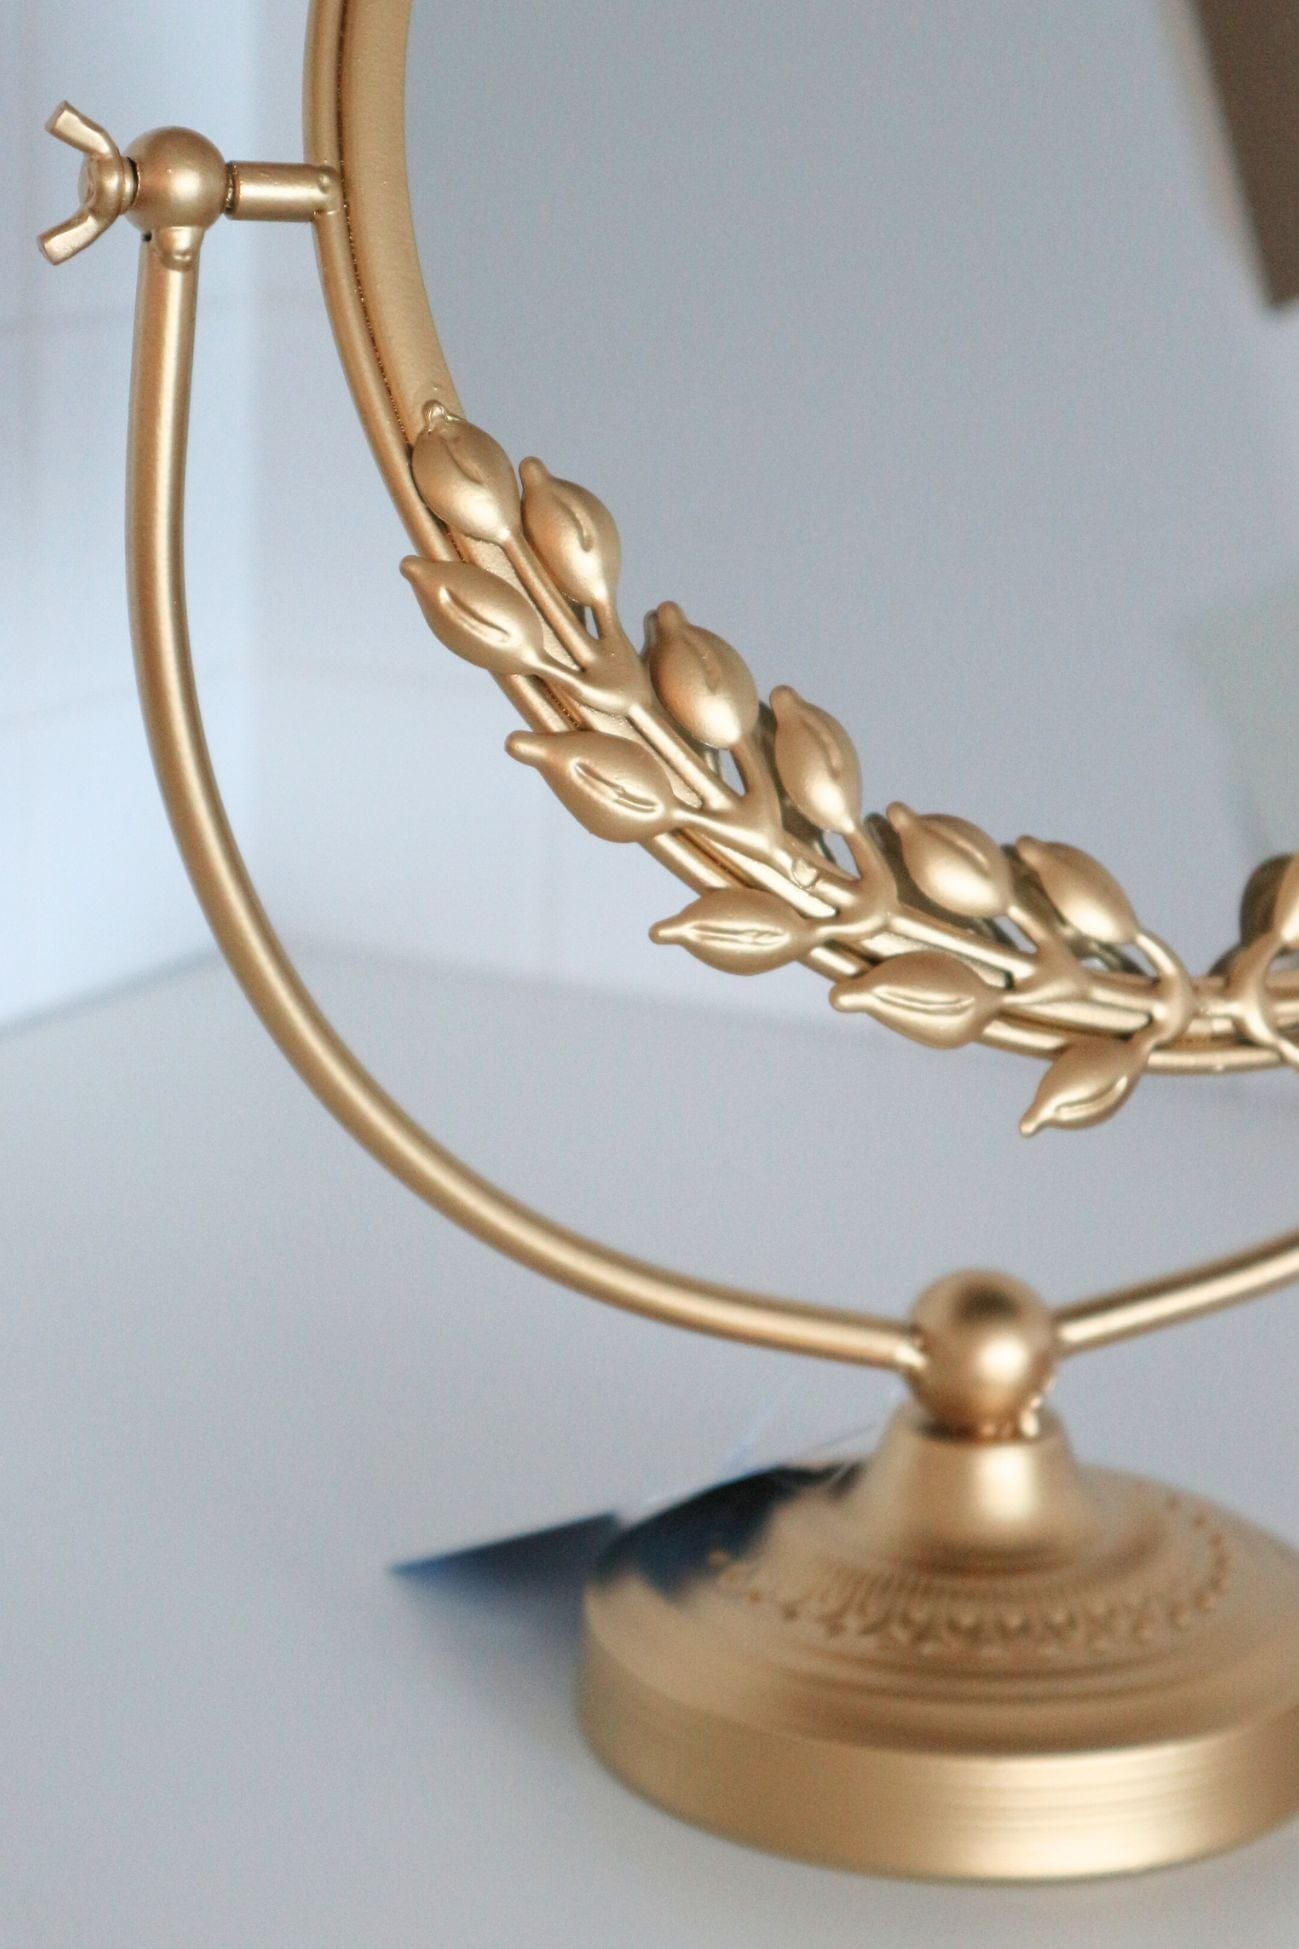 Item International Lucilla Lucilla - Specchio tondo con base e finiture in metallo dorato | Item International